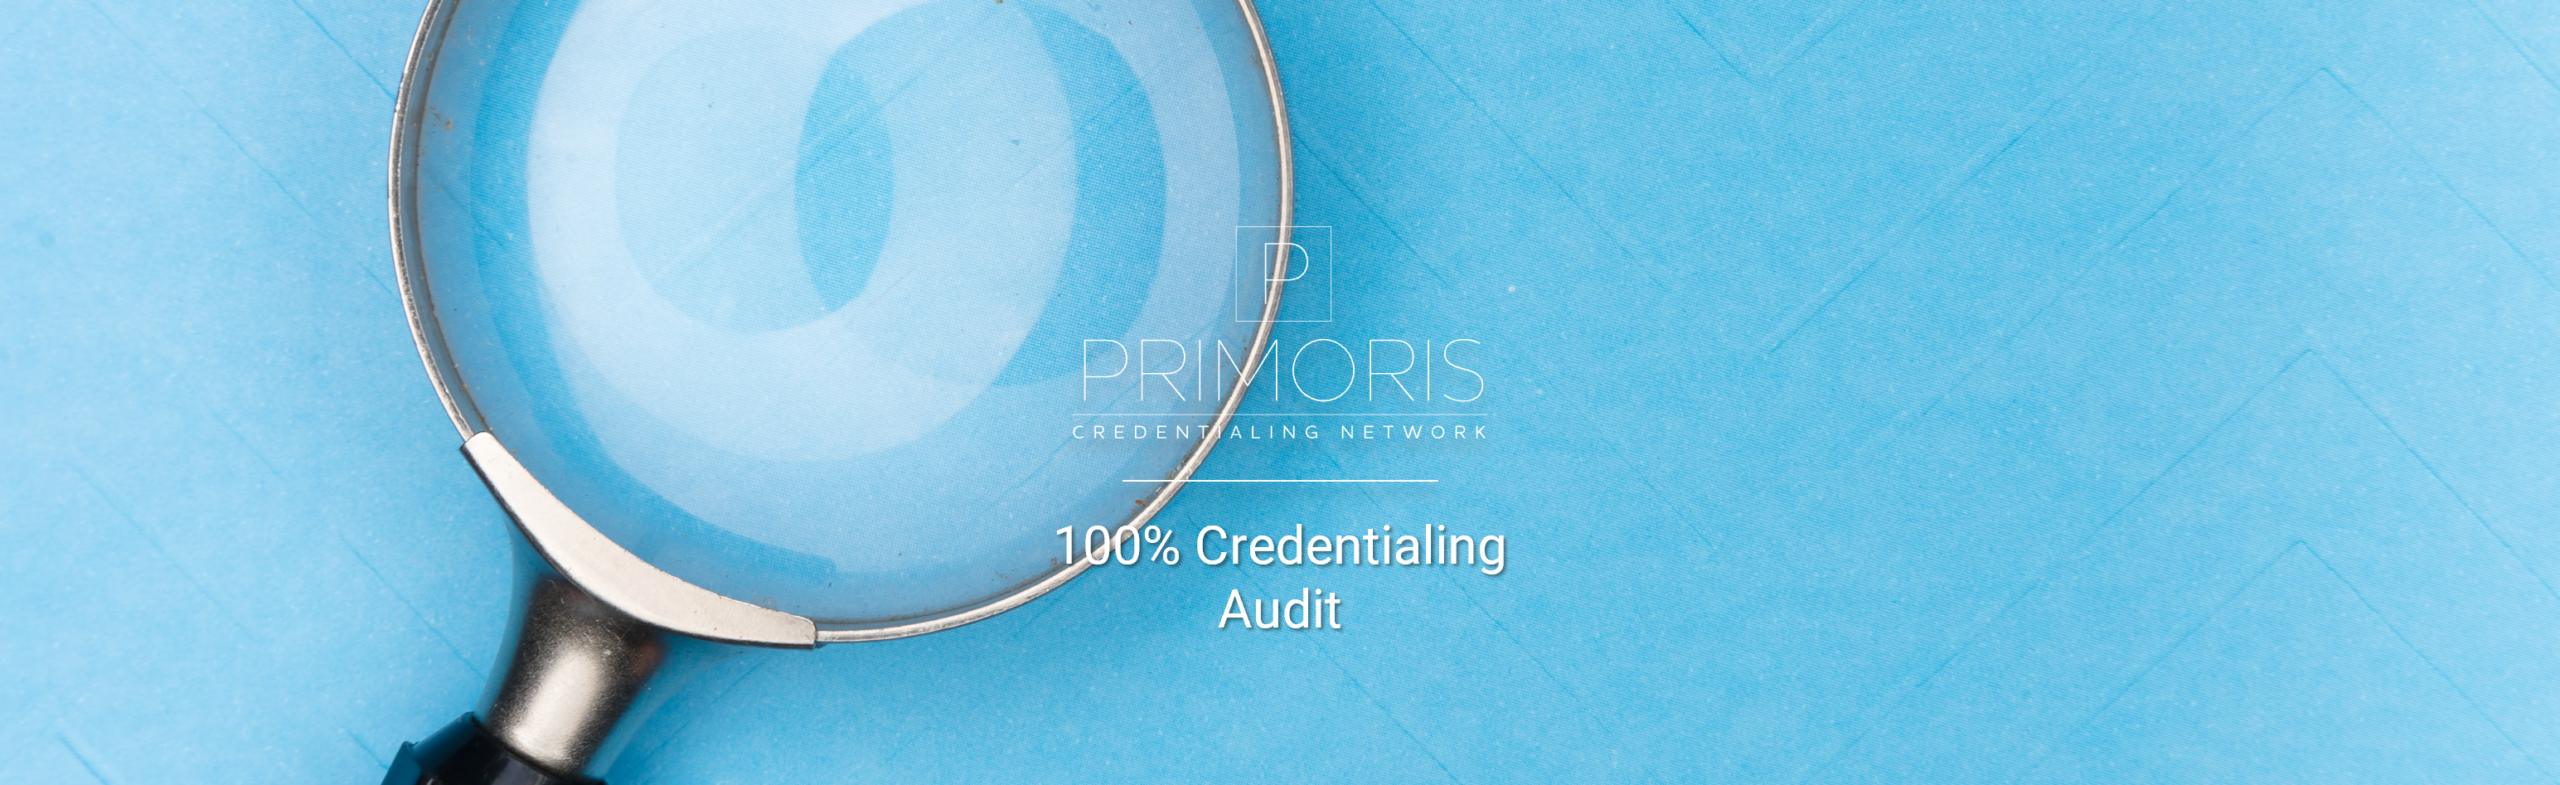 Primoris Credentialing Audit